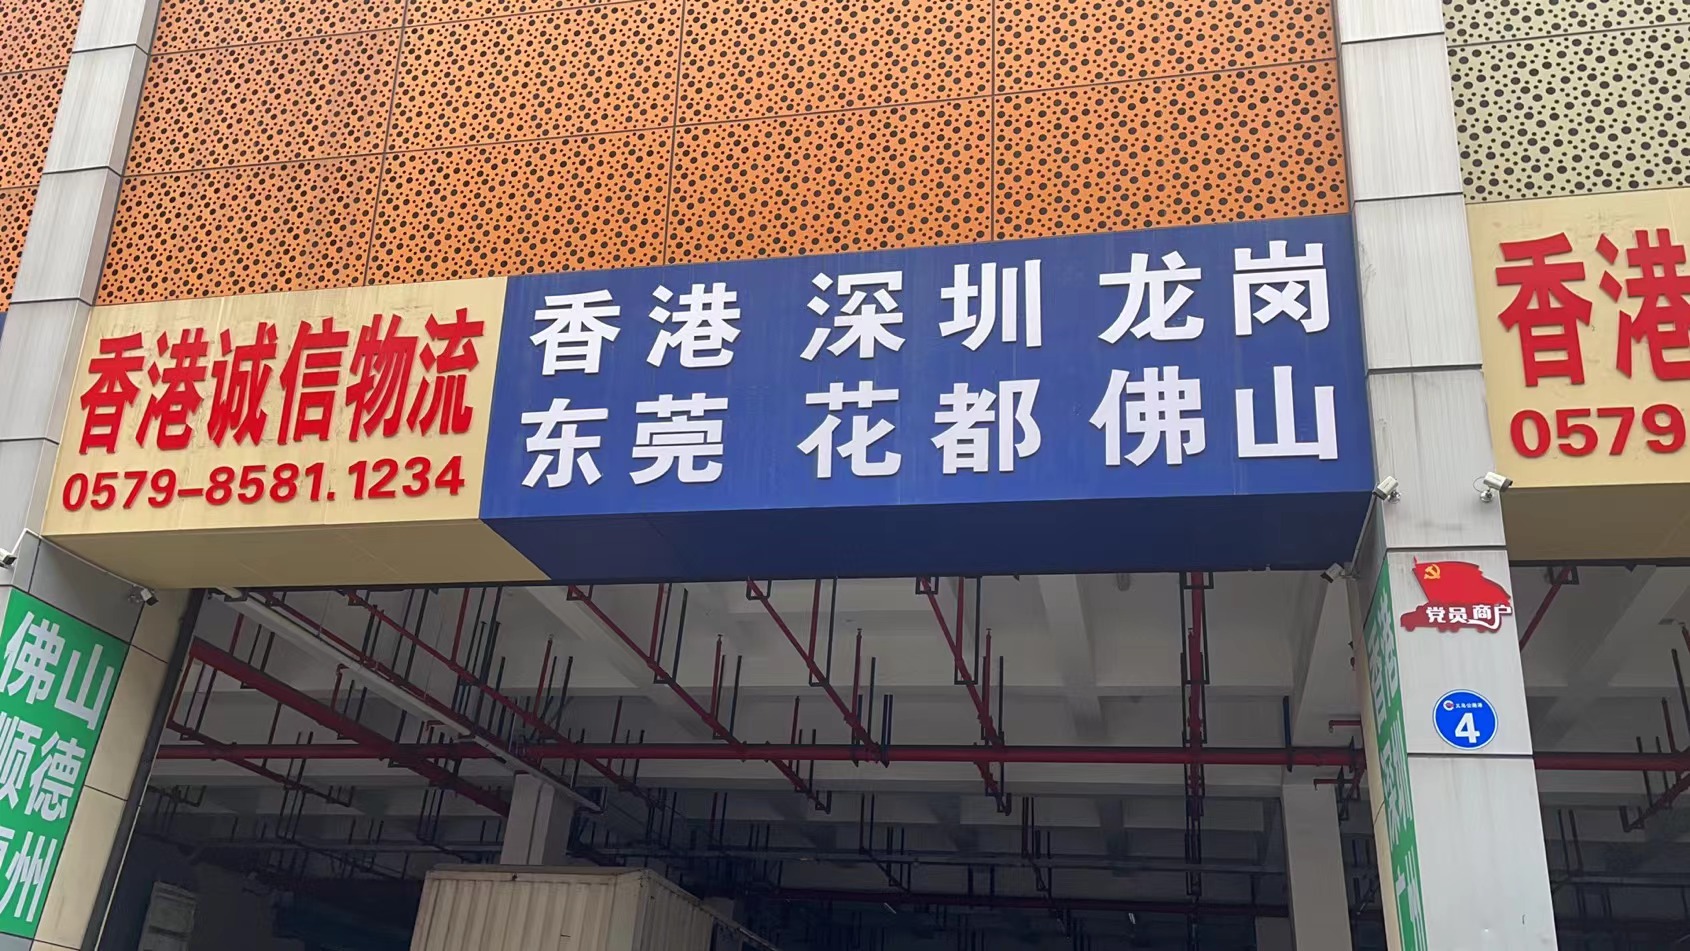 义乌至台山货运物流  整车零担 货物运输  航空货运公司电话   义乌到台山往返专线